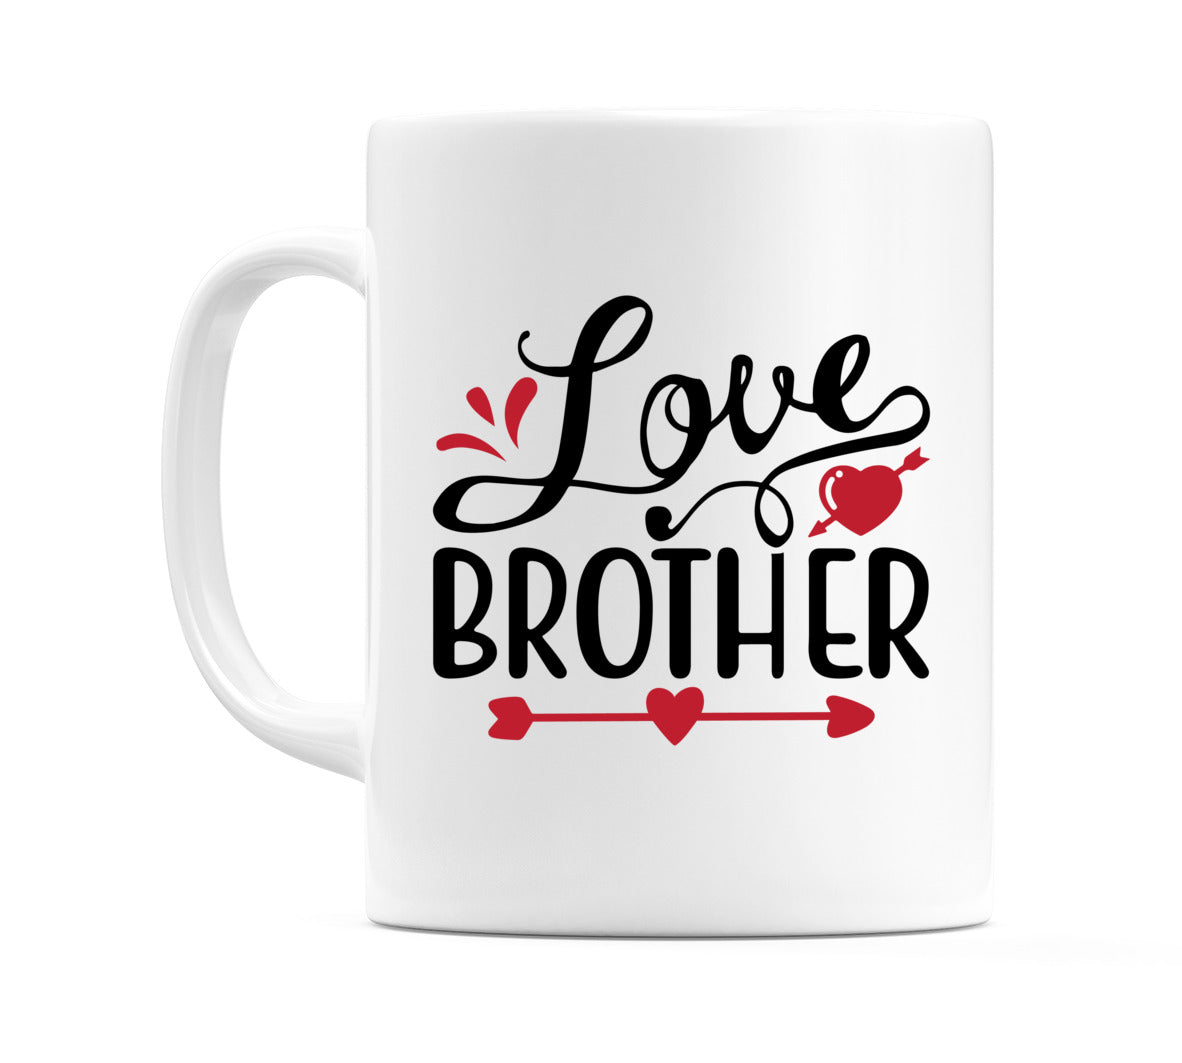 I Love Brother Mug